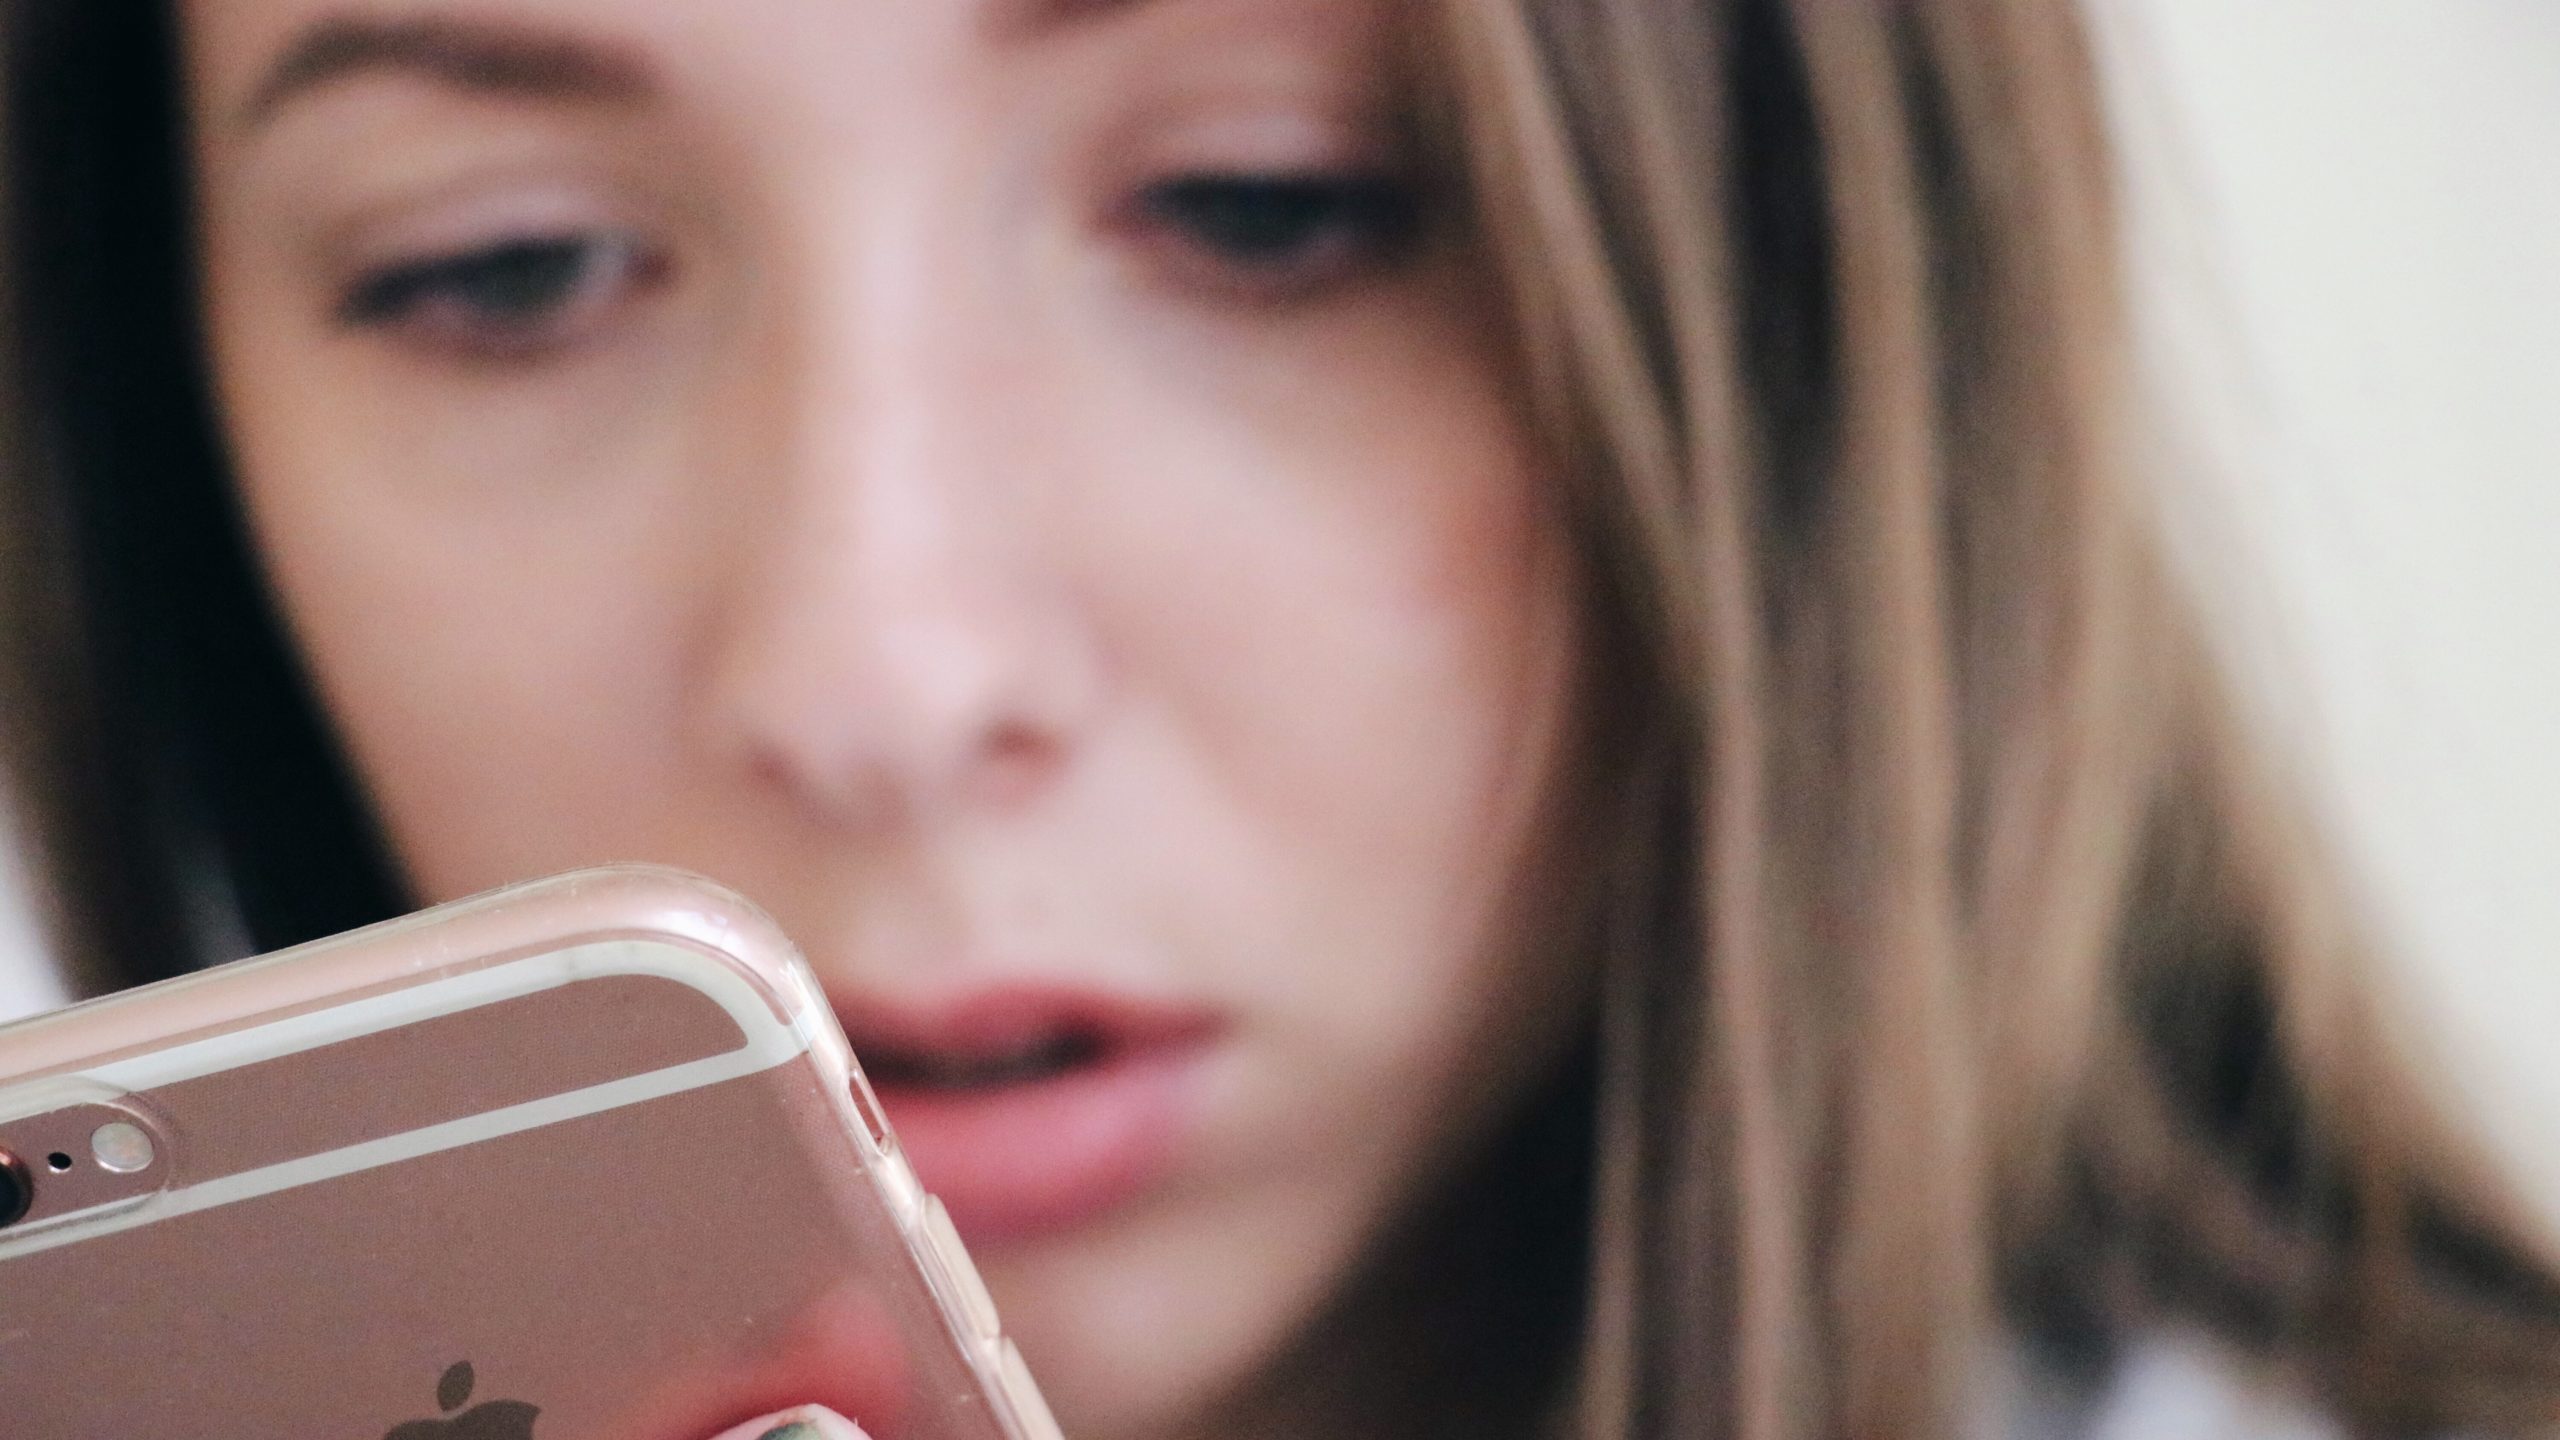 Smartphones Aren’t Ruining Your Eyes